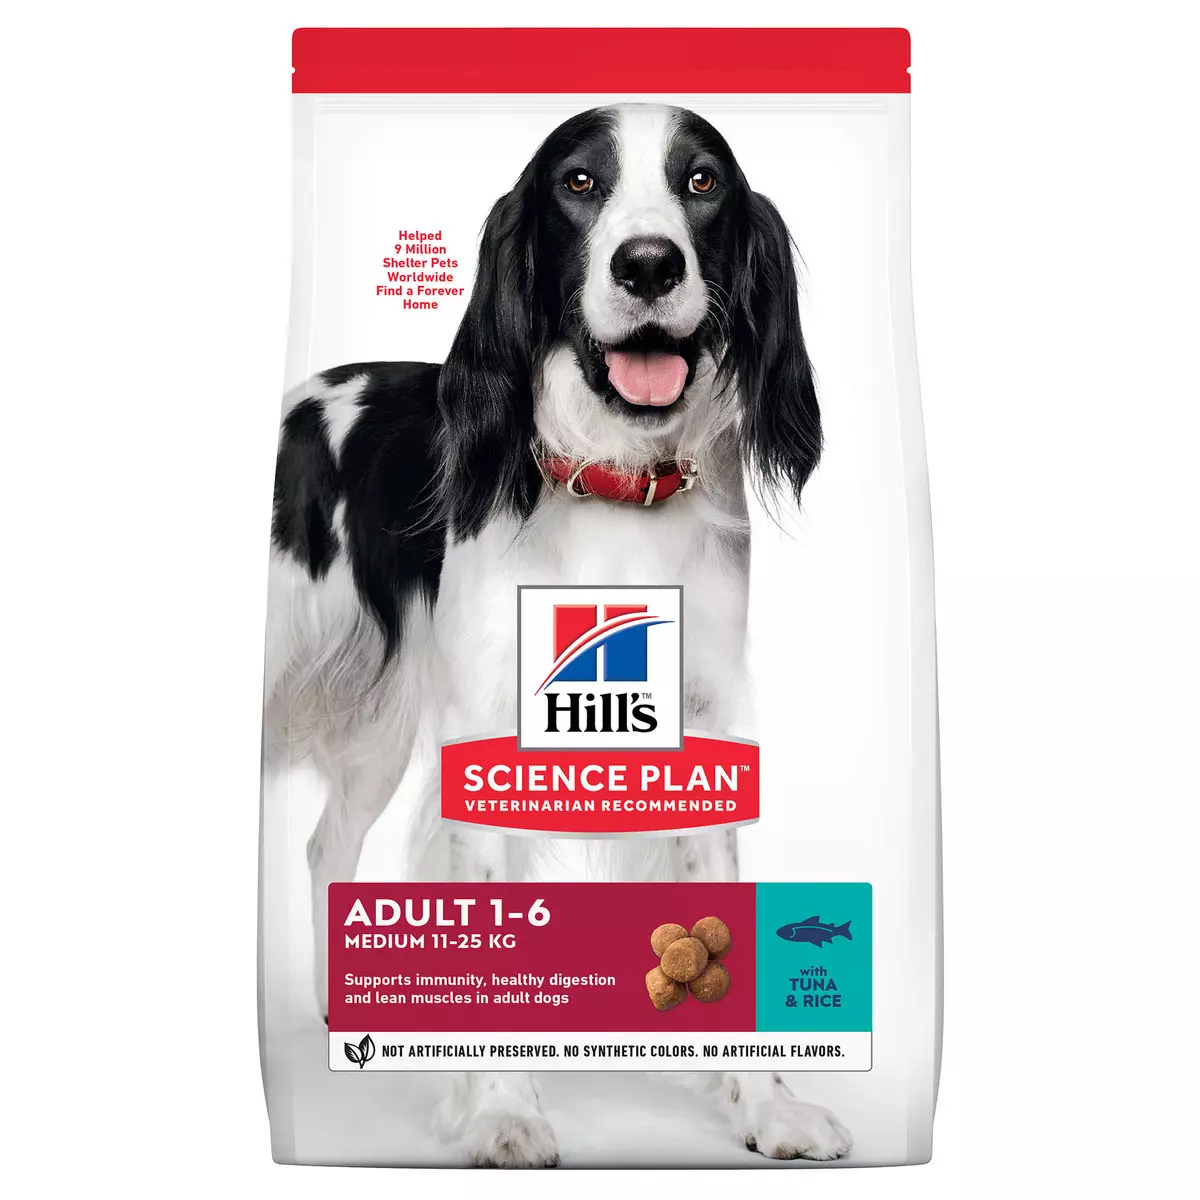 Hill ძაღლი Feed: სტერილიზებული და მოხუცები ძაღლები. ძაღლის შემადგენლობა დიდი და საშუალო ჯიშების კვებავს, ბრინჯსა და სხვებს. შეფასება 25063_10